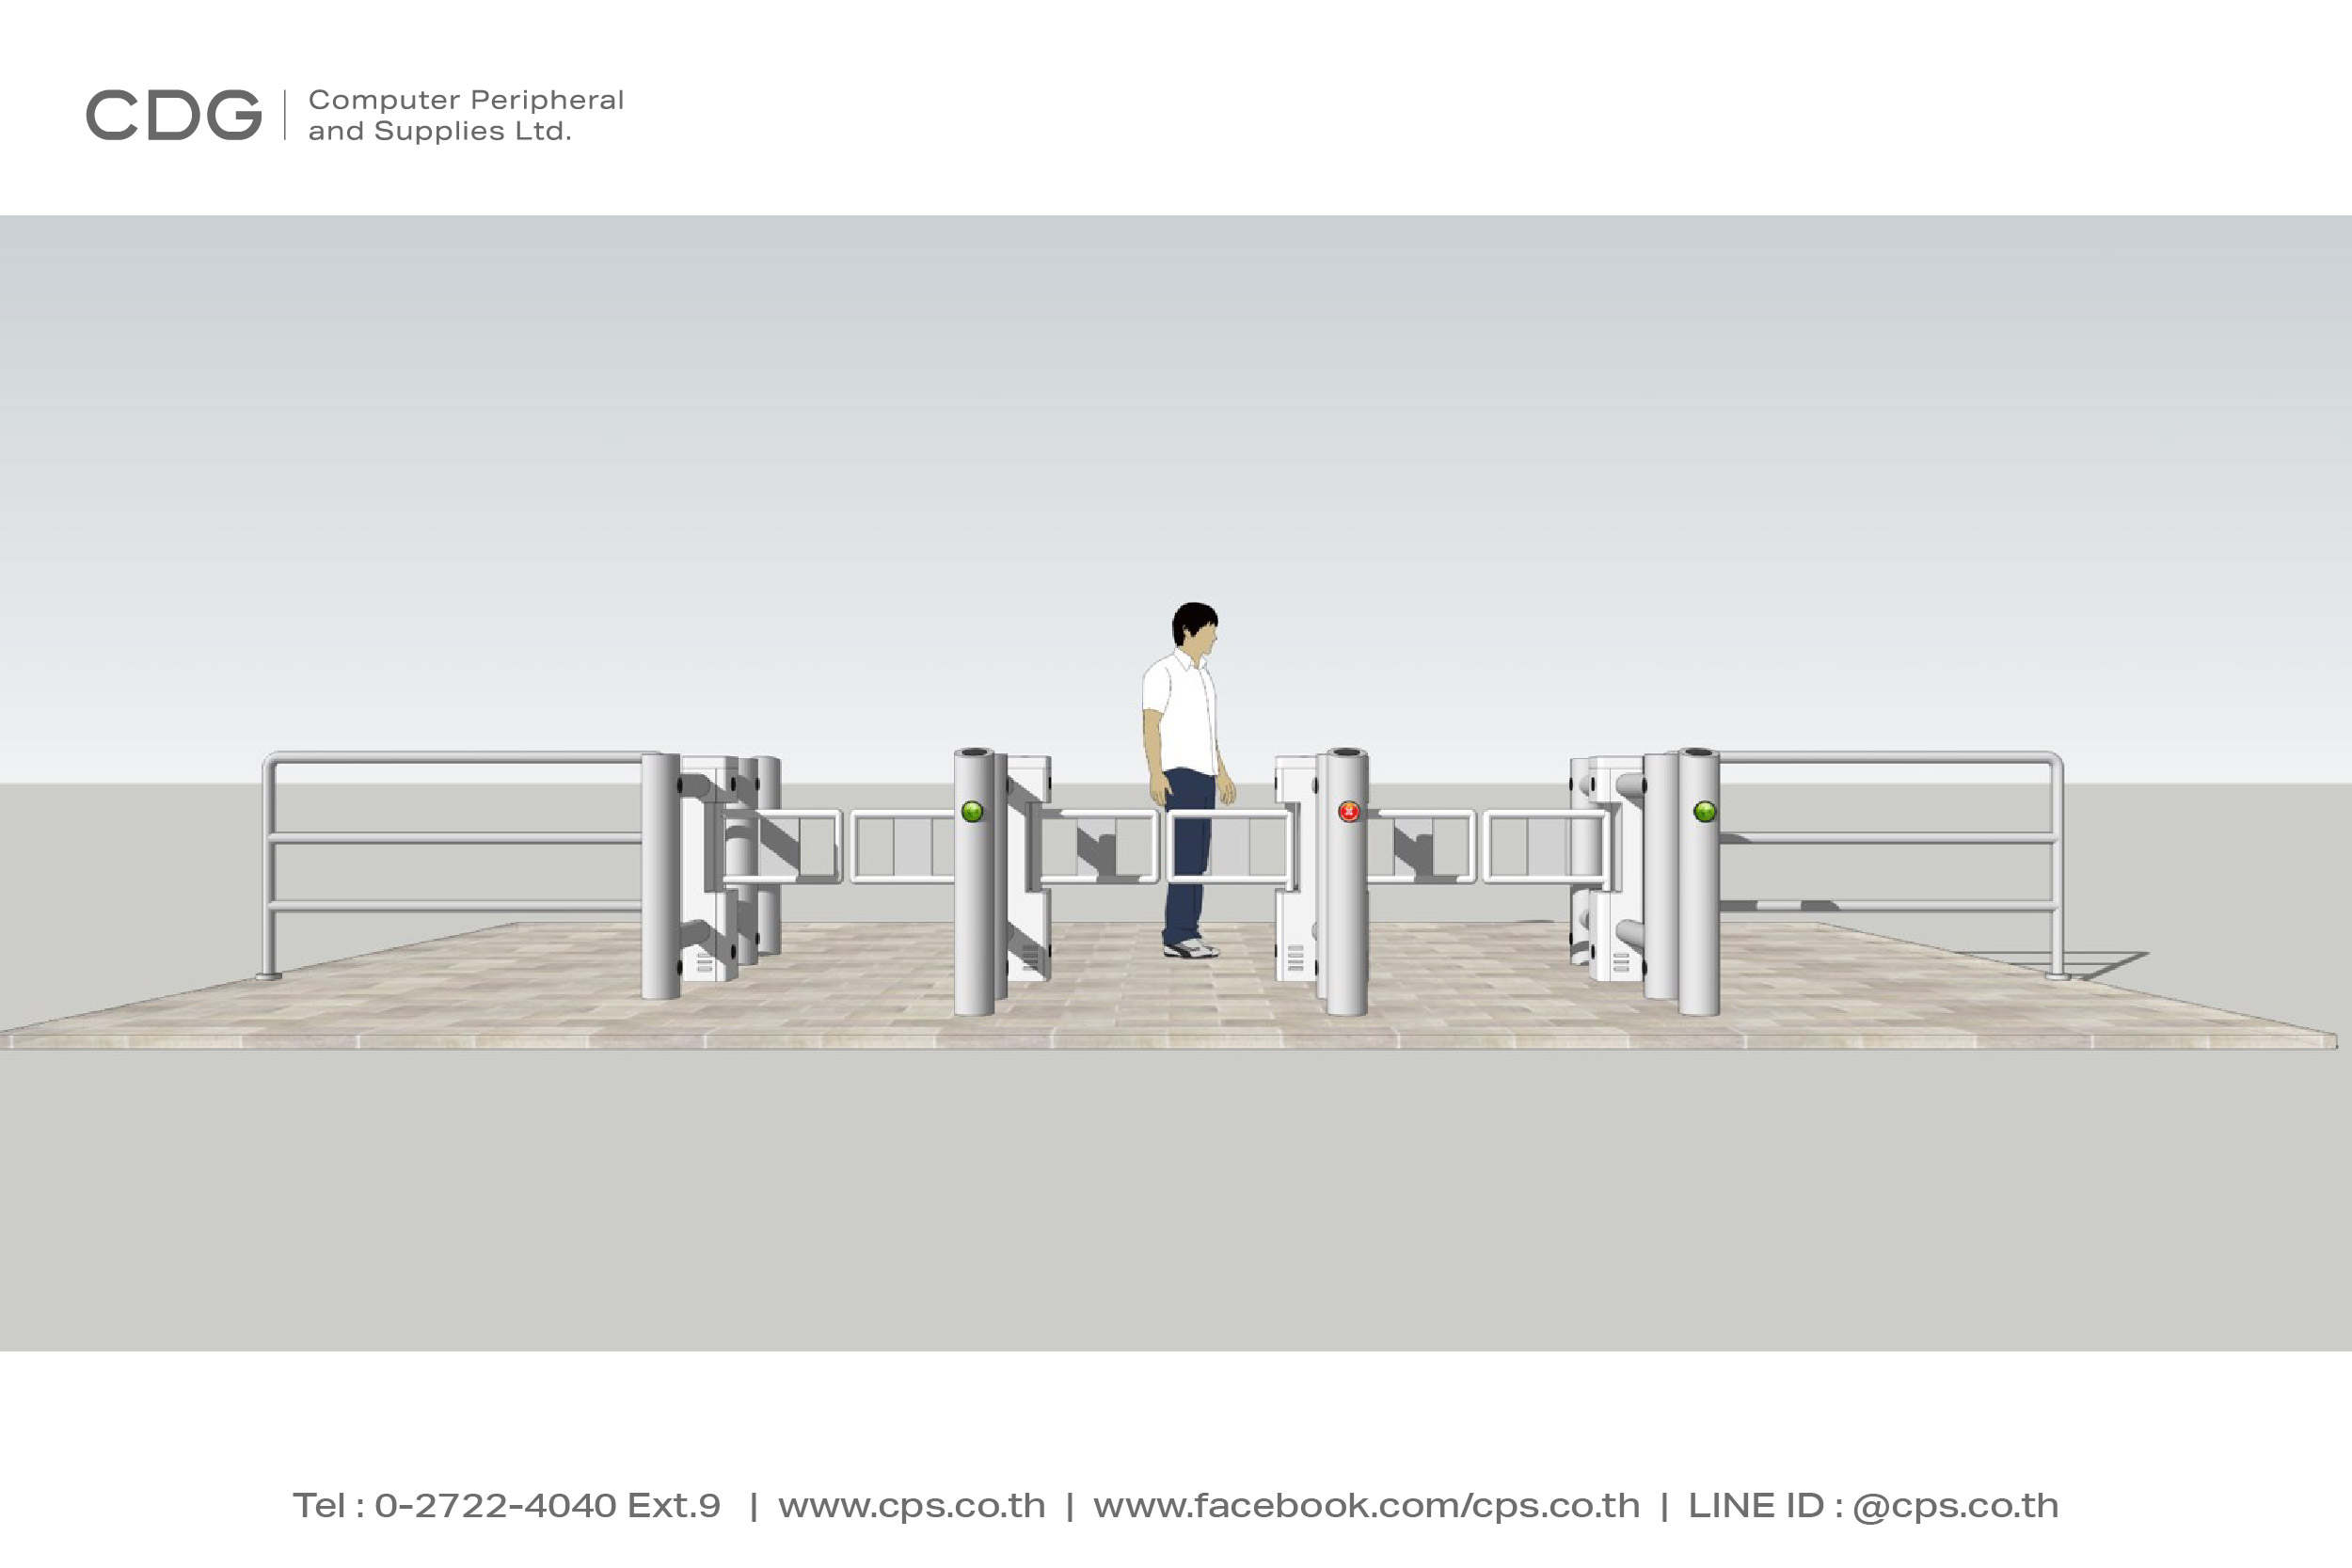 ประตูอัตโนมัติ แบบบานสวิง (Stainless Steel Swing Gate) รุ่น X310